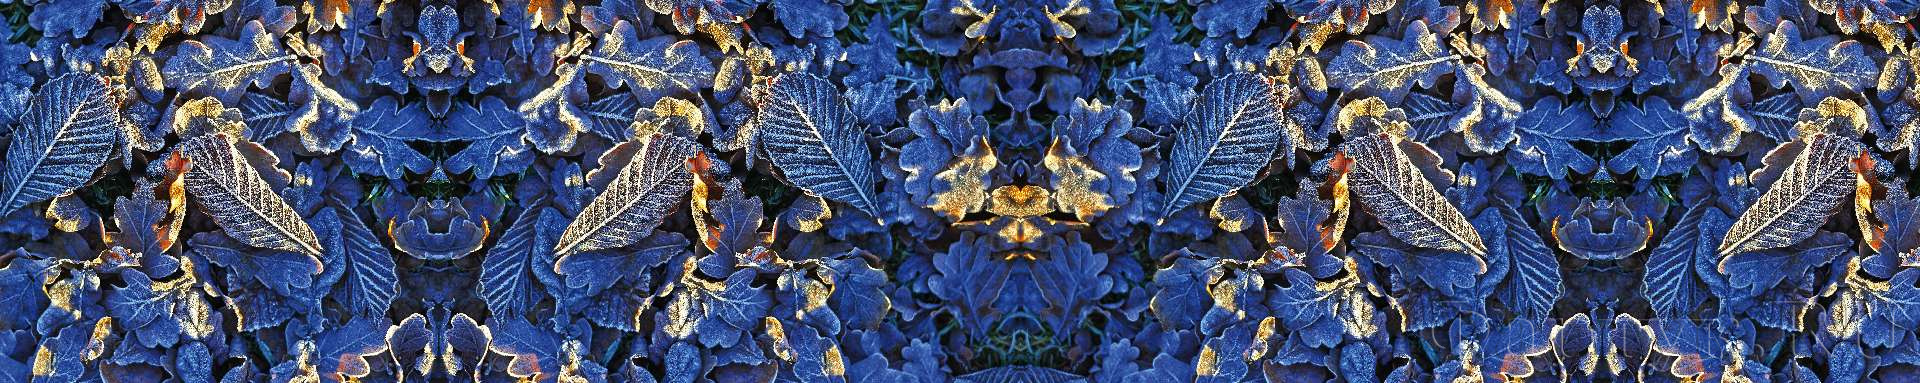 текстура синих листьев